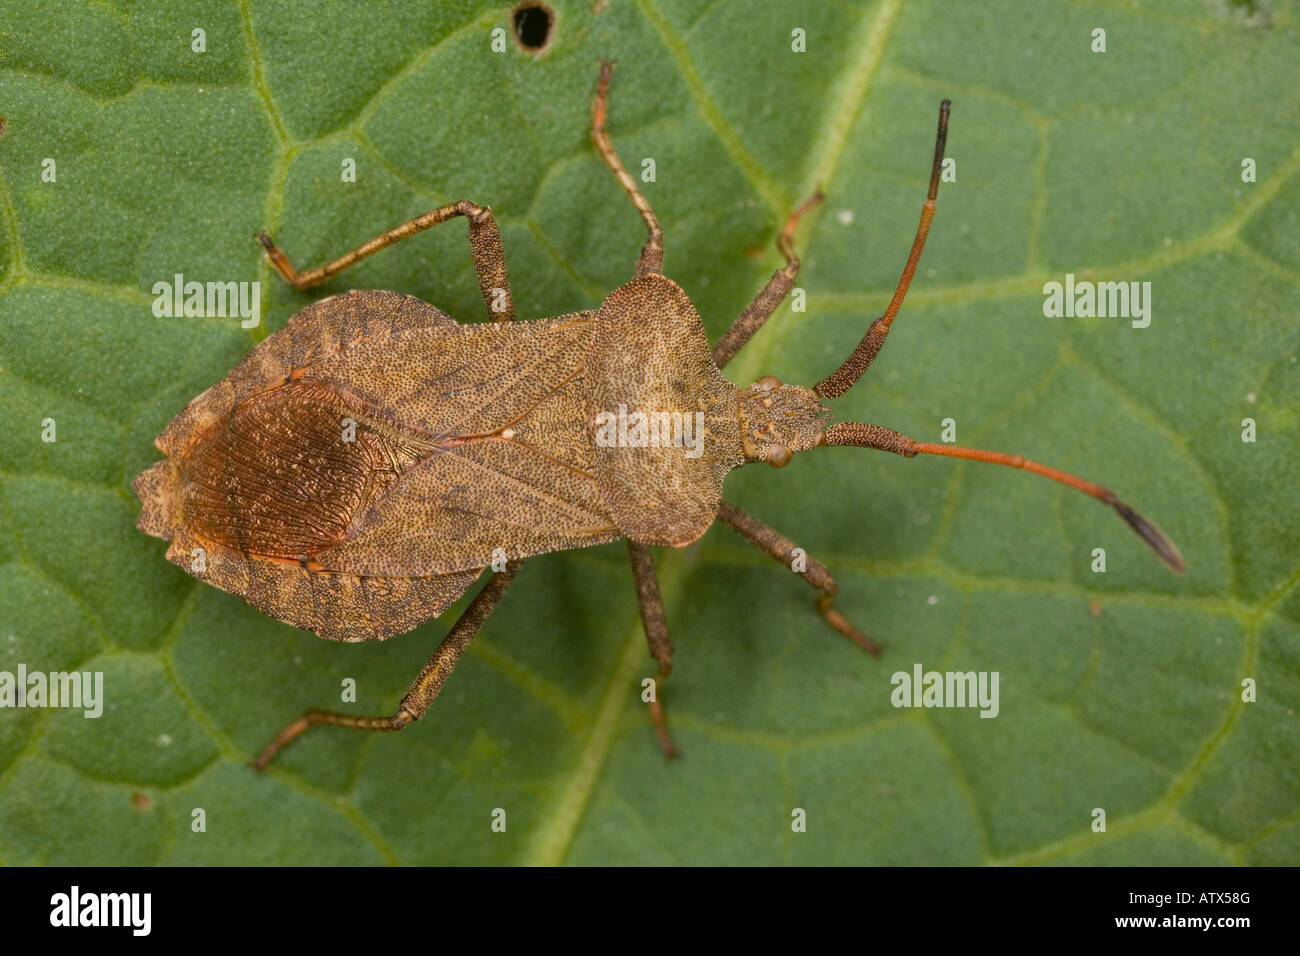 A squash bug close to Coreus marginatus Stock Photo